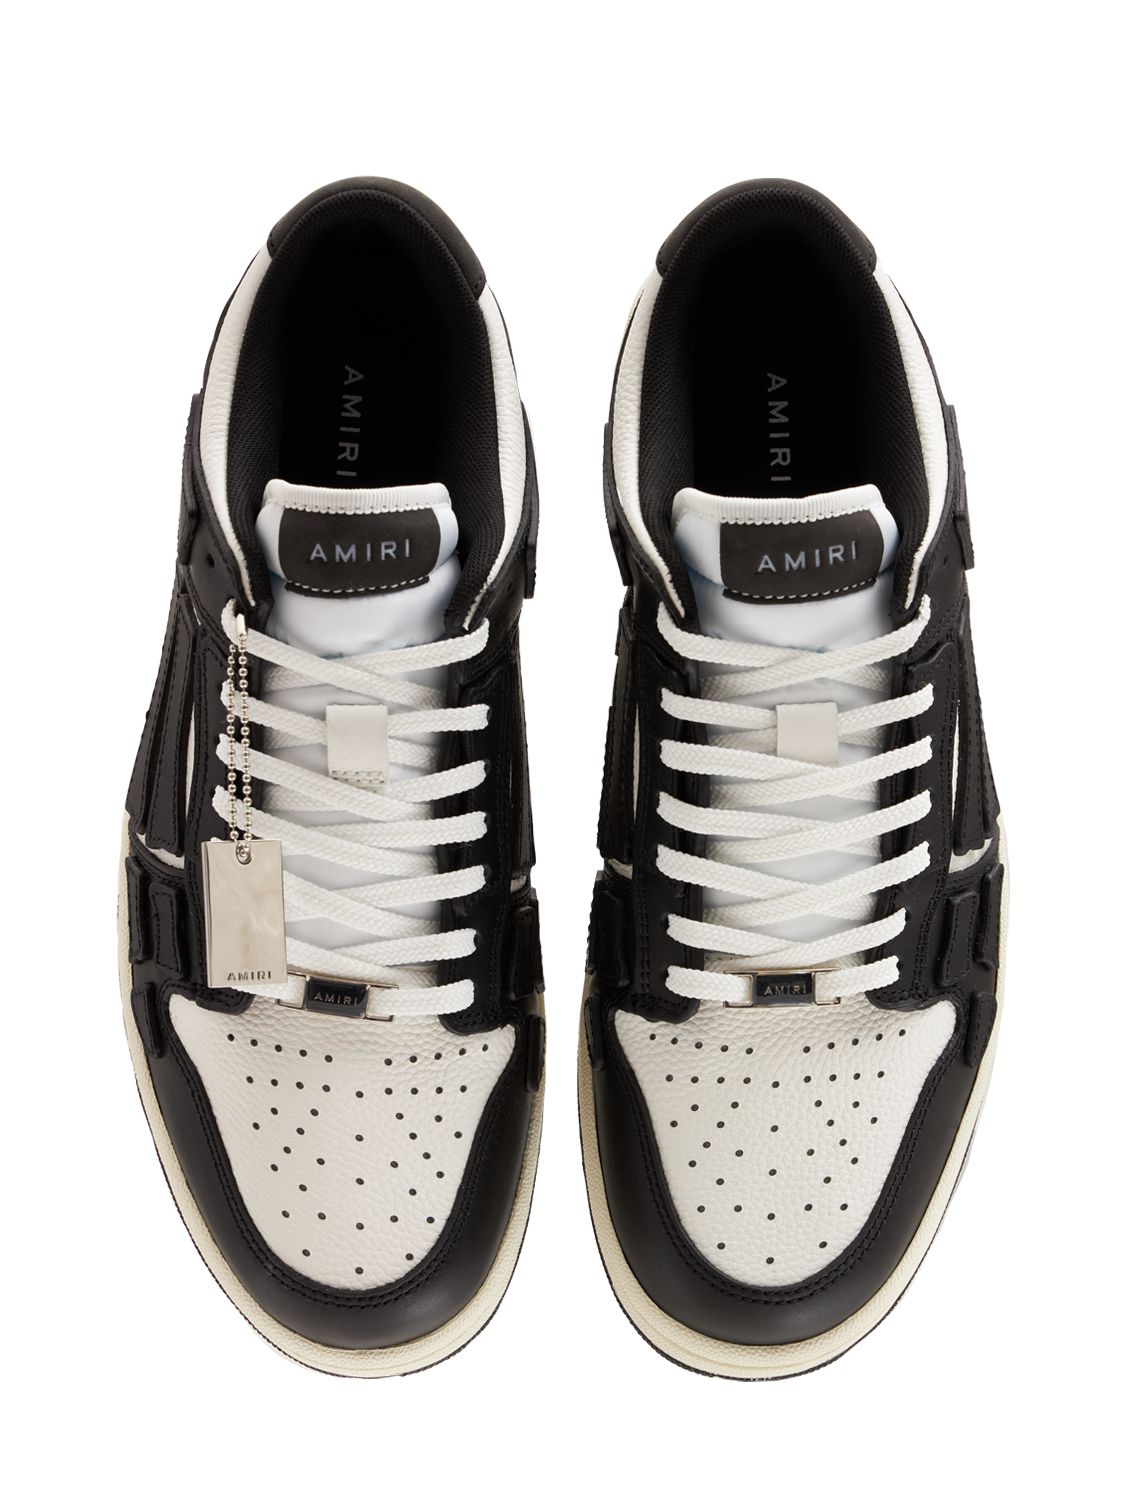 Shop Amiri Lvr Exclusive Skel-top Leather Sneakers In Black,white